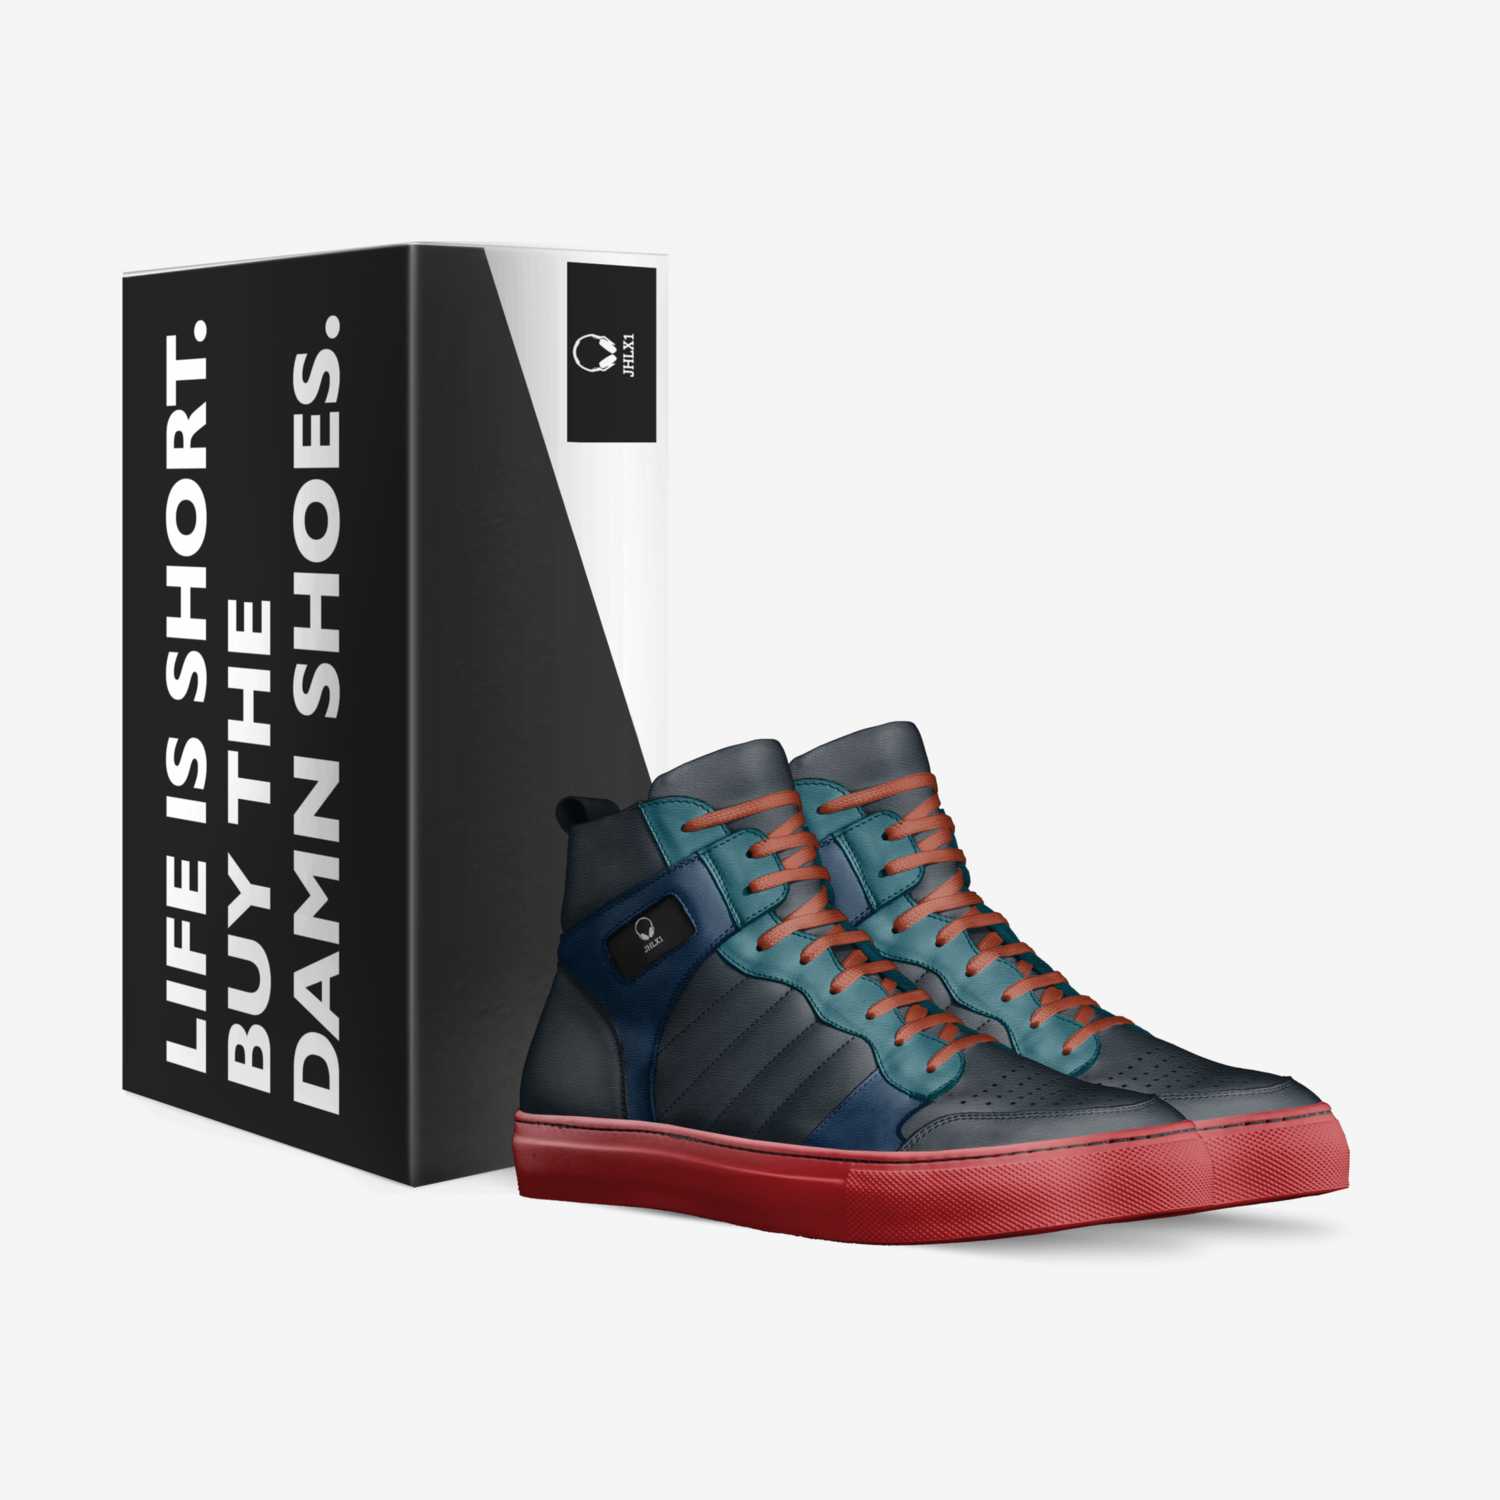 JHLX custom made in Italy shoes by Joshua Liam Hendricks | Box view